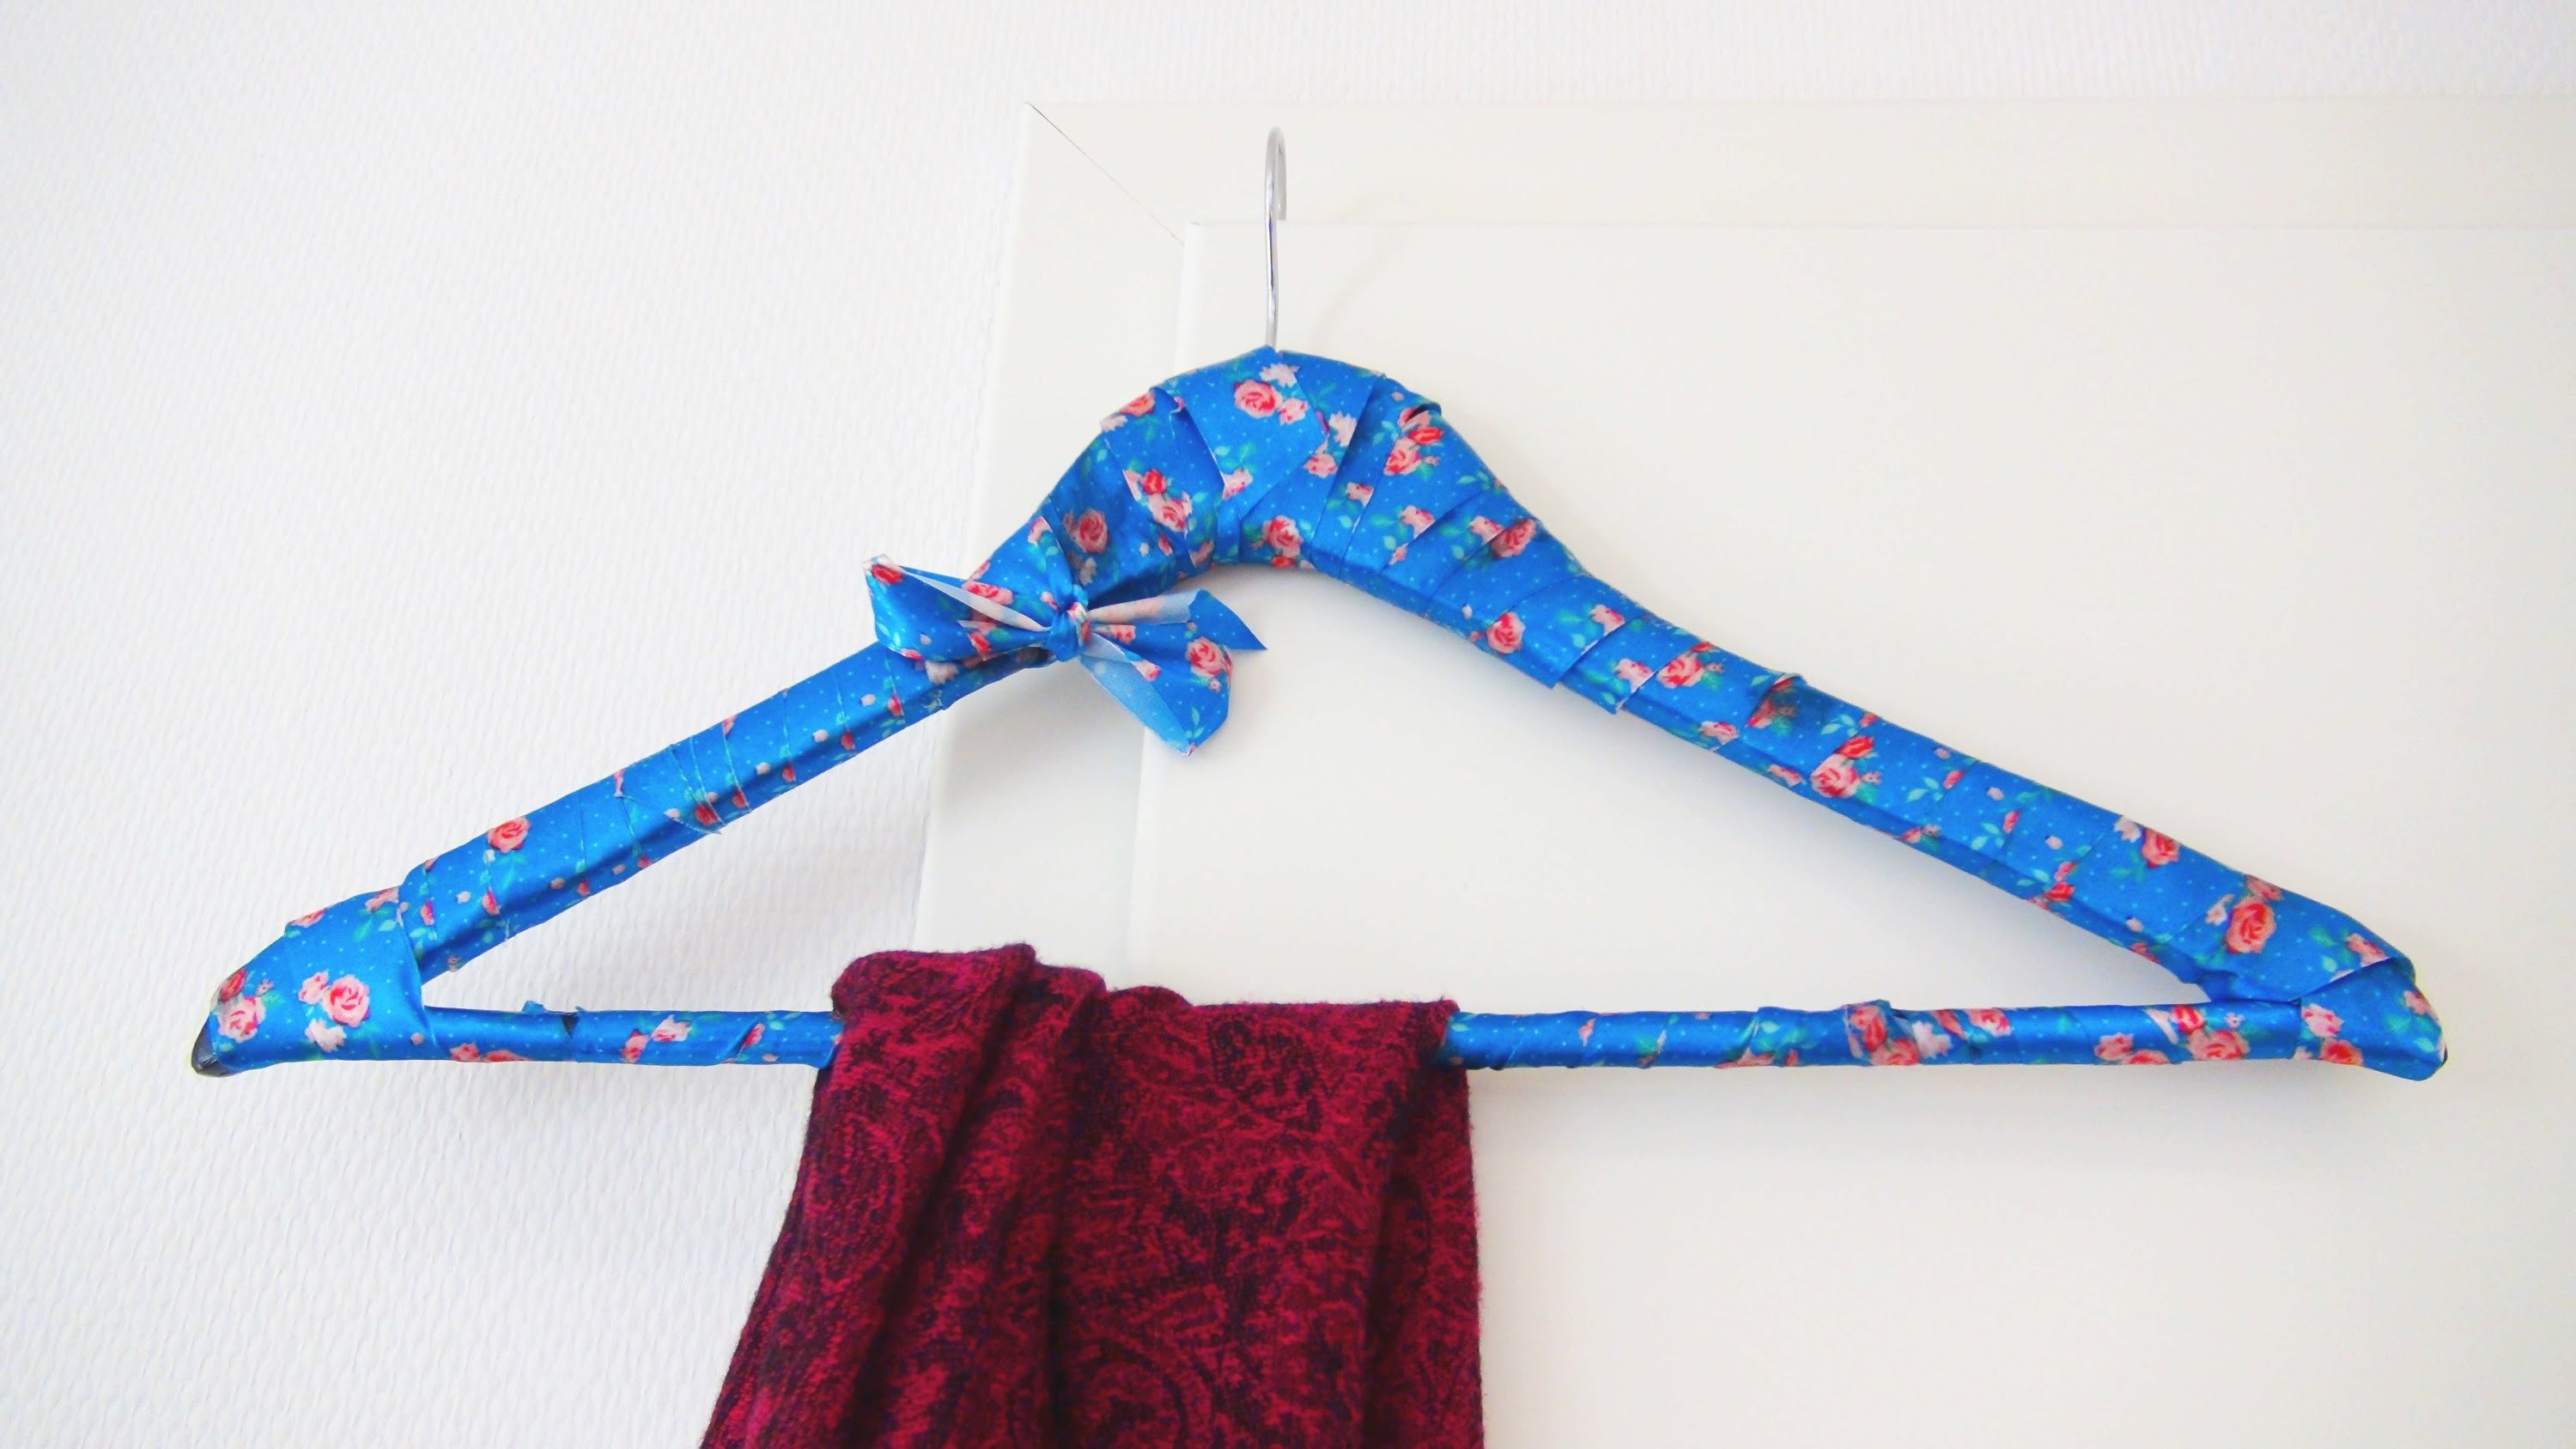 Kleiderbügel DIY | Kleiderbügel ganz einfach verschönern | Upcycling Clothes Hanger Tutorial